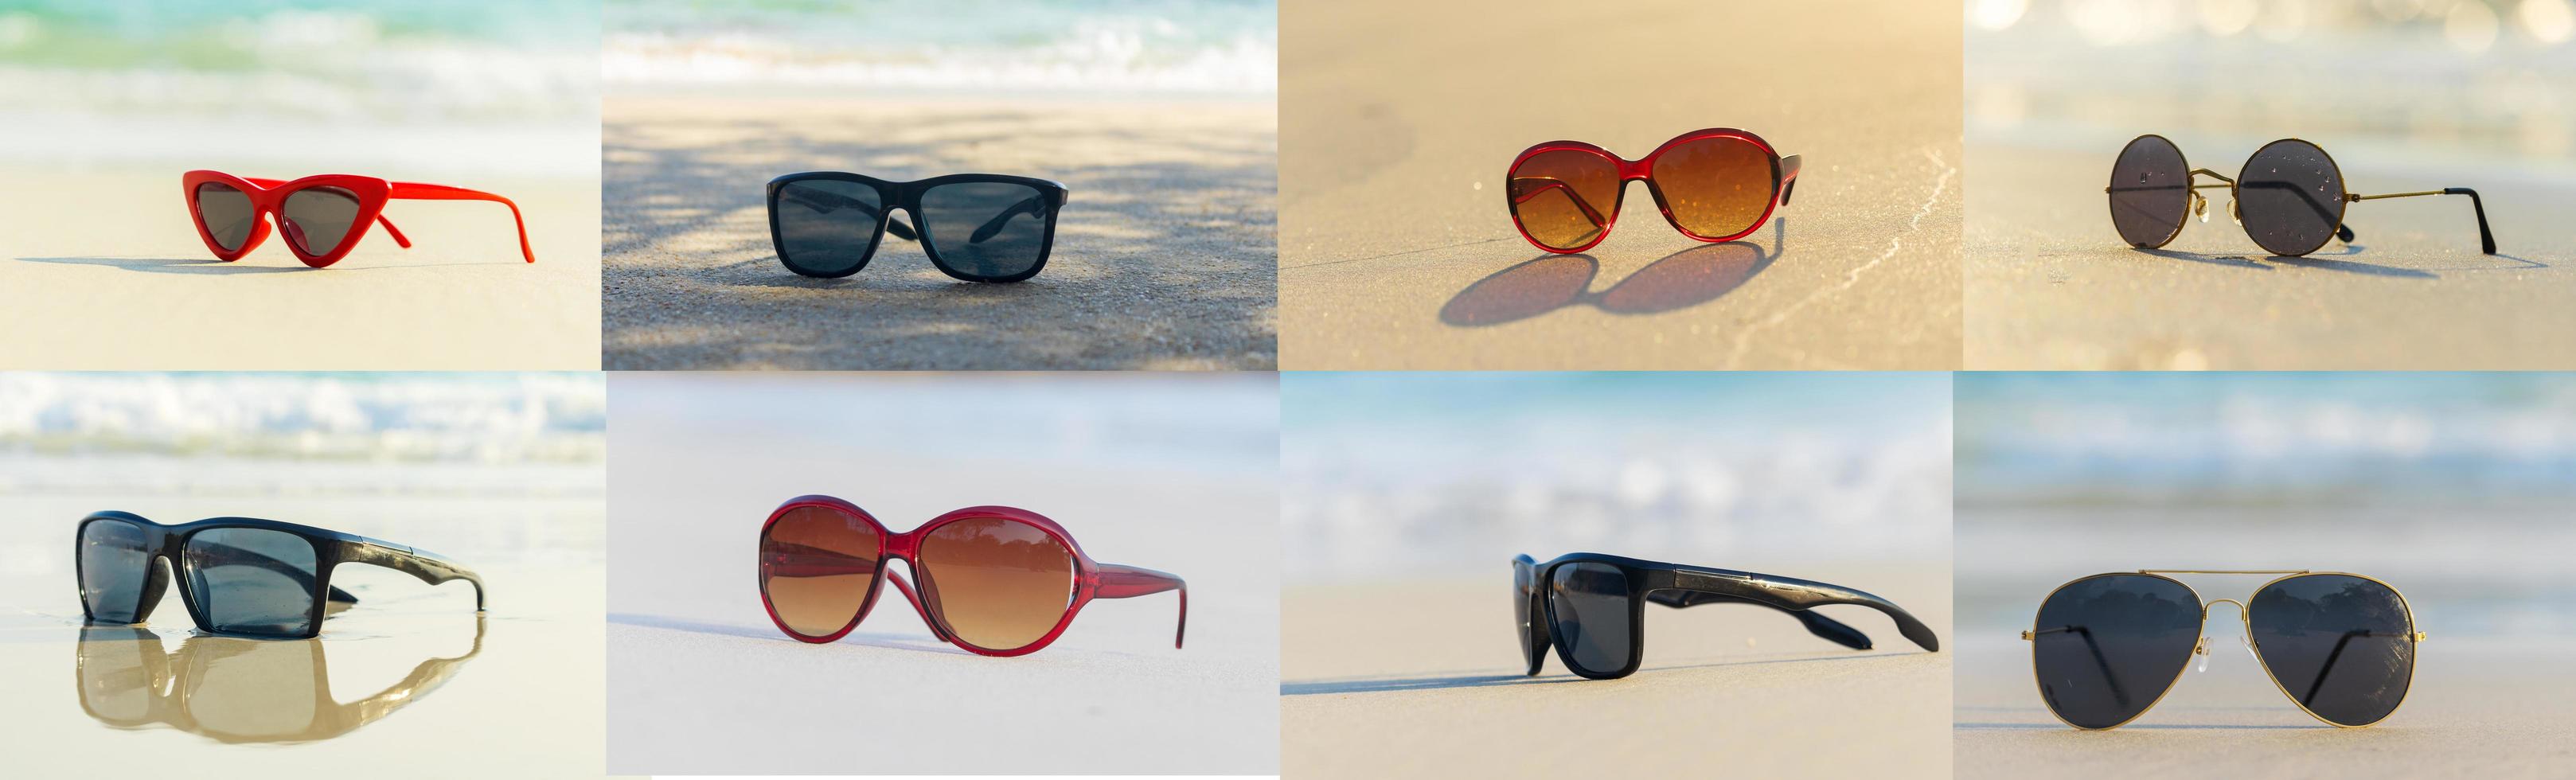 lunettes de soleil de mode de collection. lunettes sur la plage en été photo